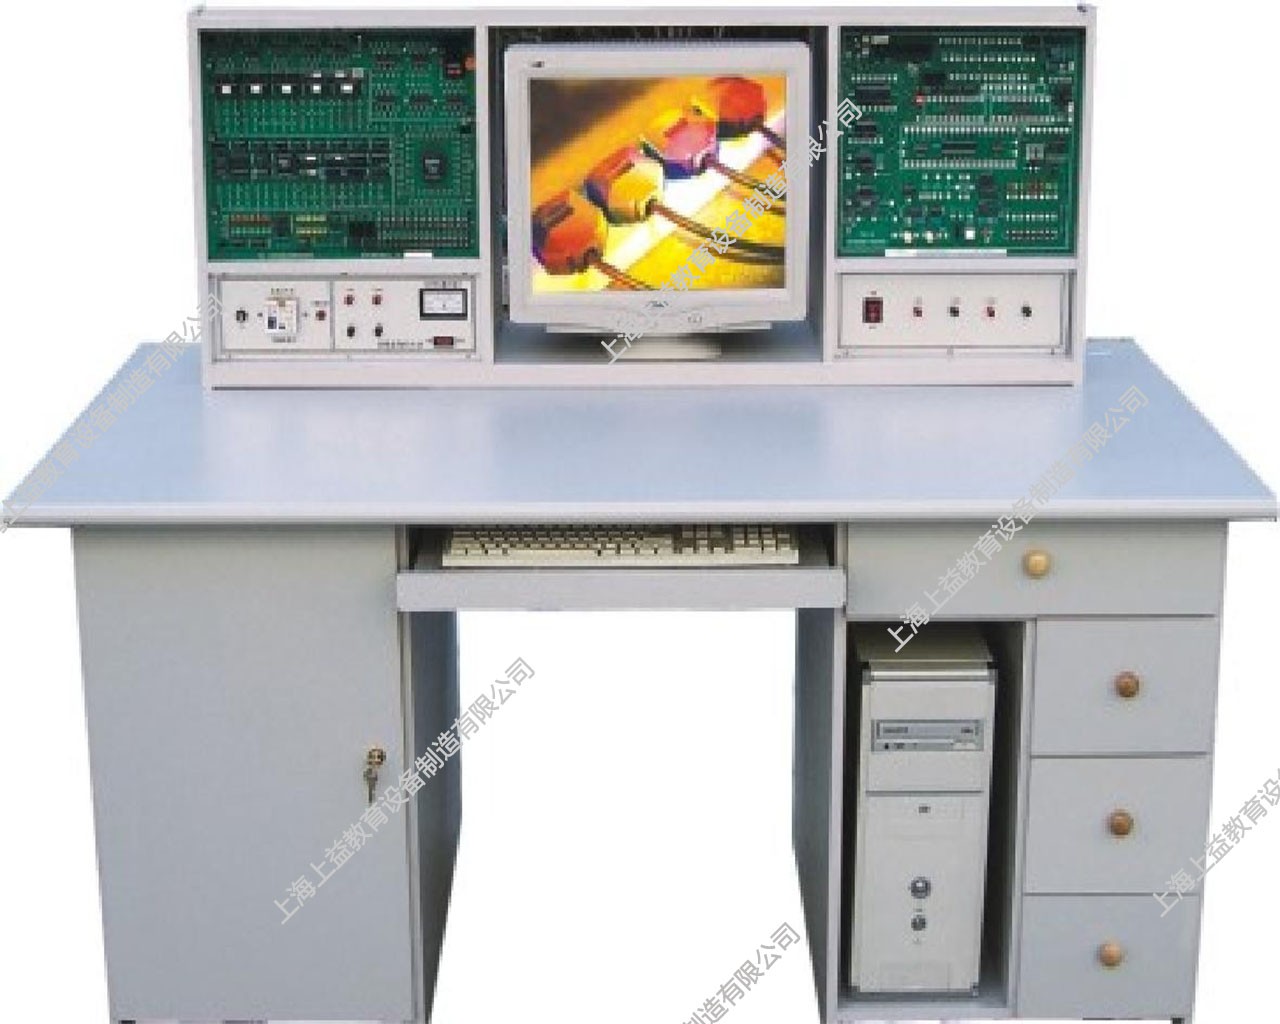 SYJSJ-123 計算機組成原理、微機接口及應用綜合實驗臺